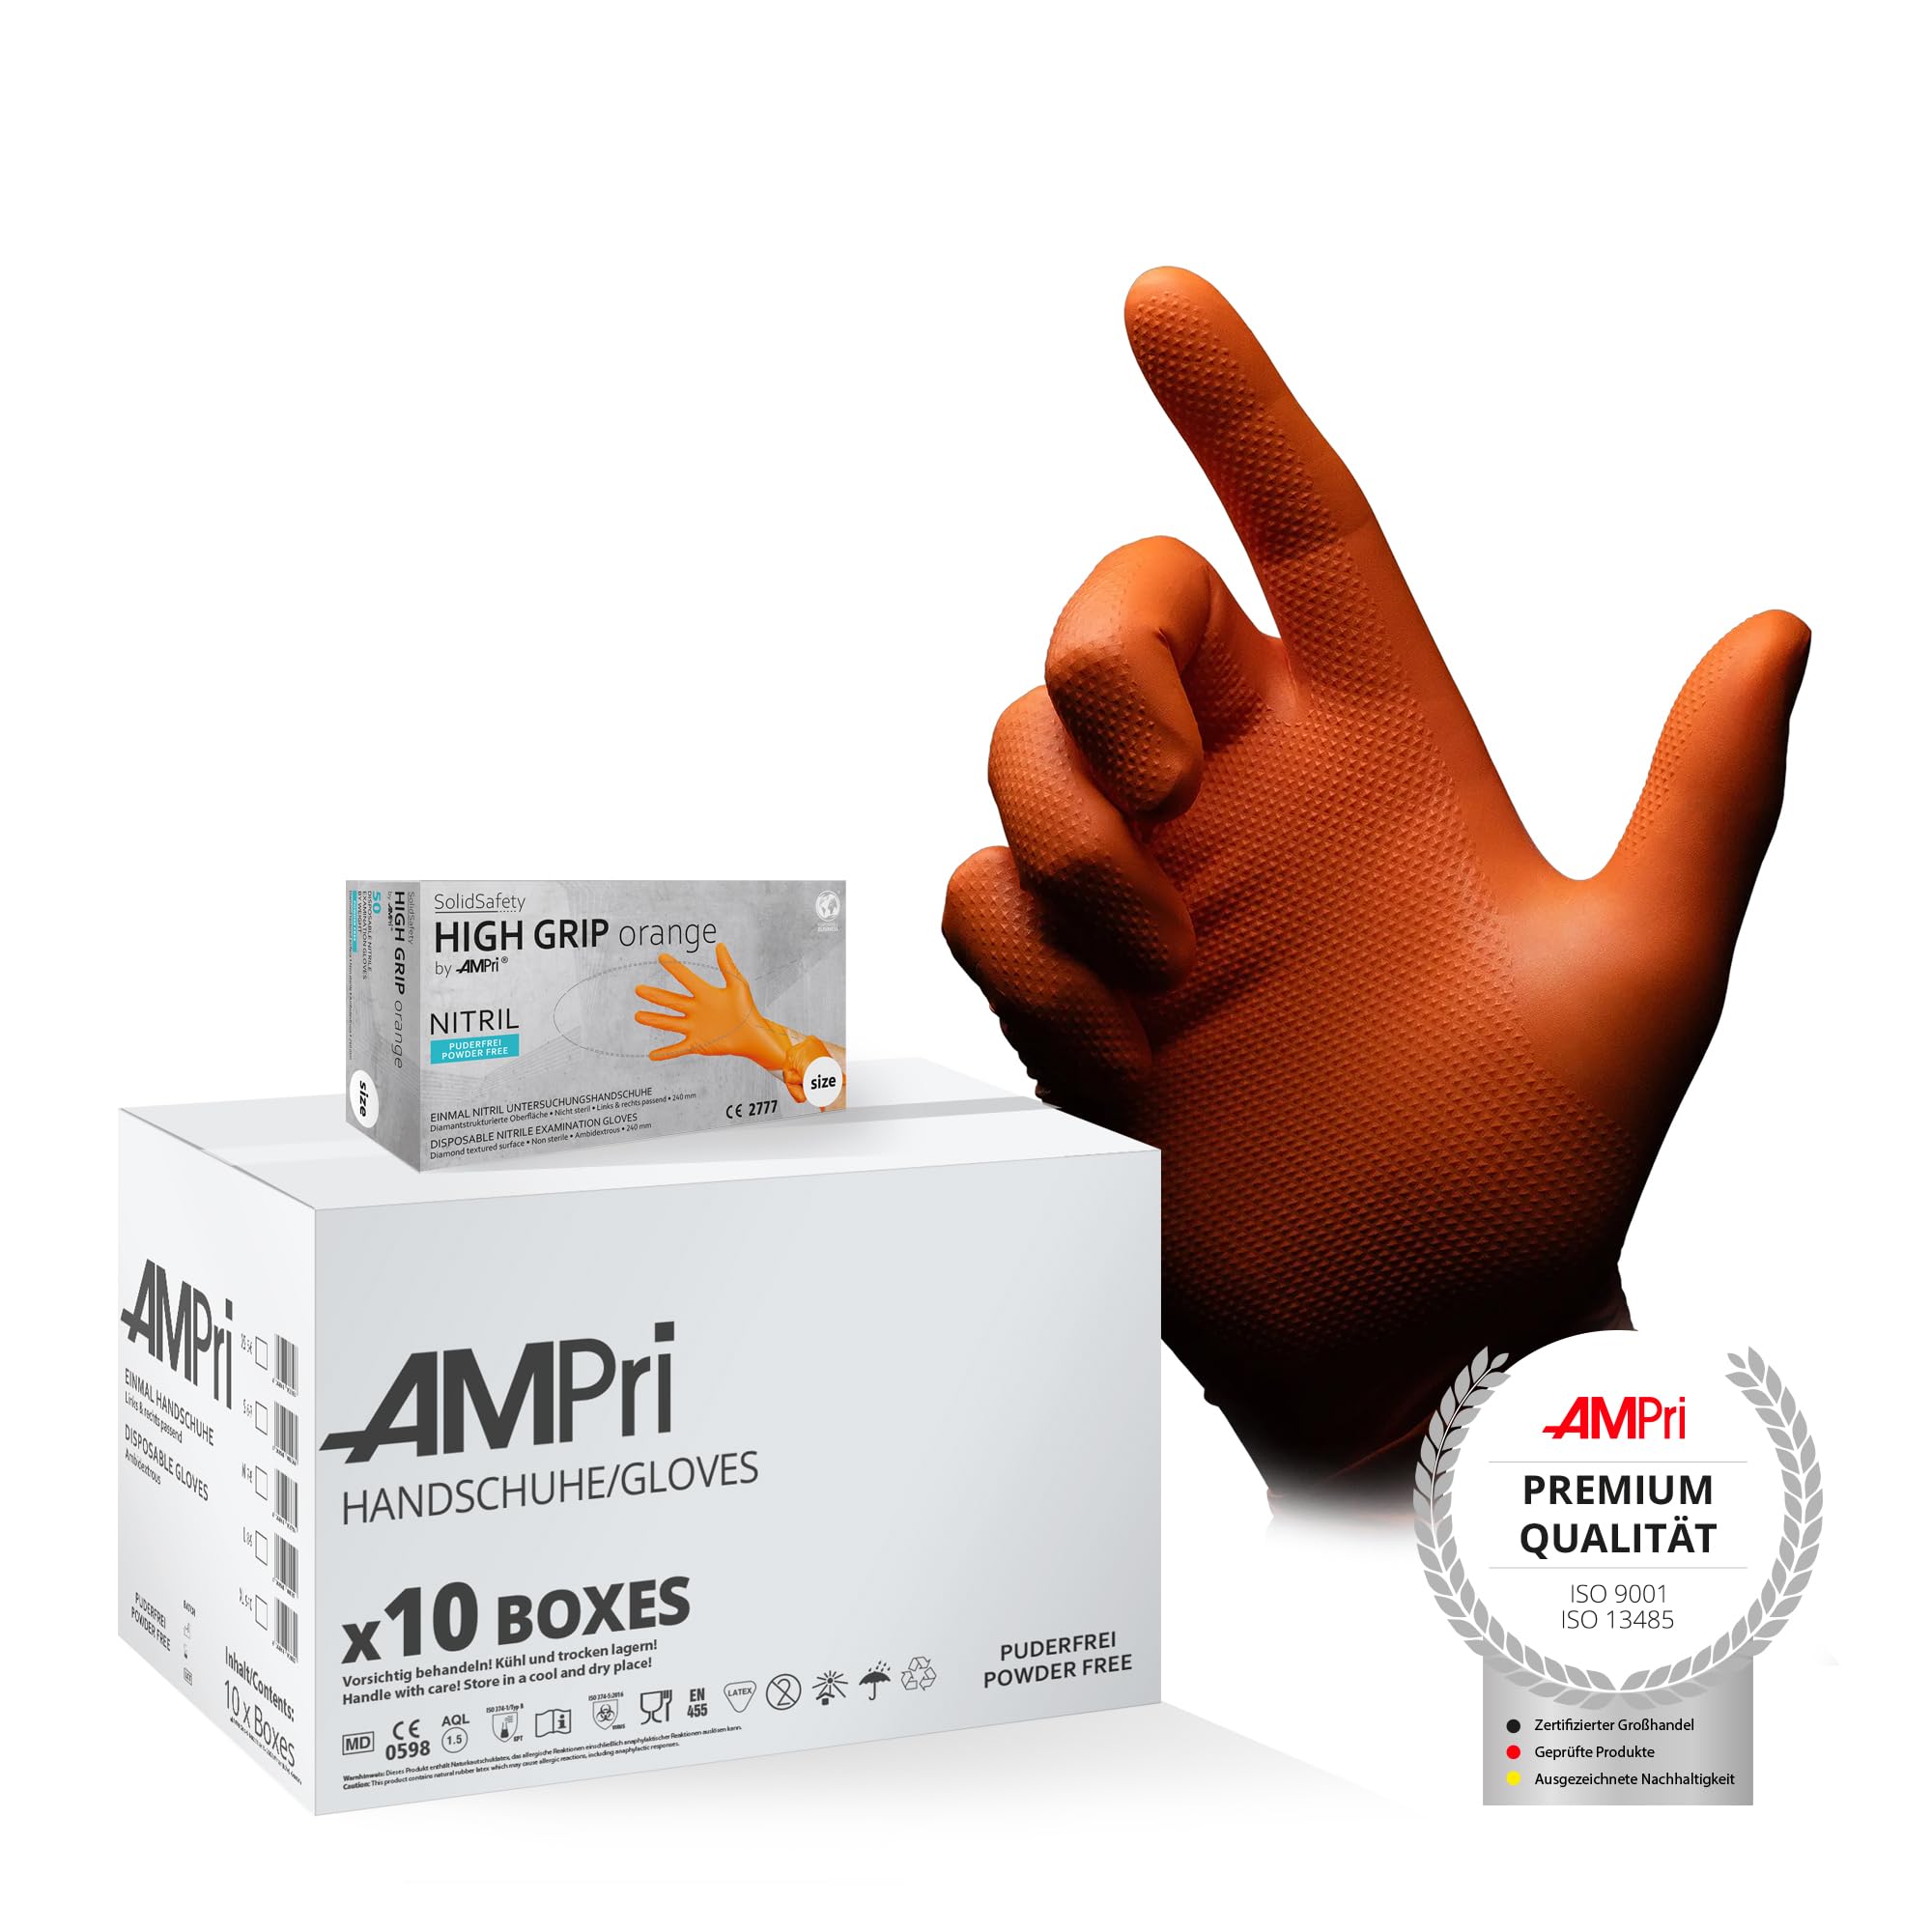 AMPri High Grip Einmalhandschuh aus Nitril, 10 Box a 50 Stk, Größe S, orange, SolidSafety: extra griffiger und chemikalienbeständiger Arbeitsschutzhandschuh in den Größen S, M, L, XL, XXL